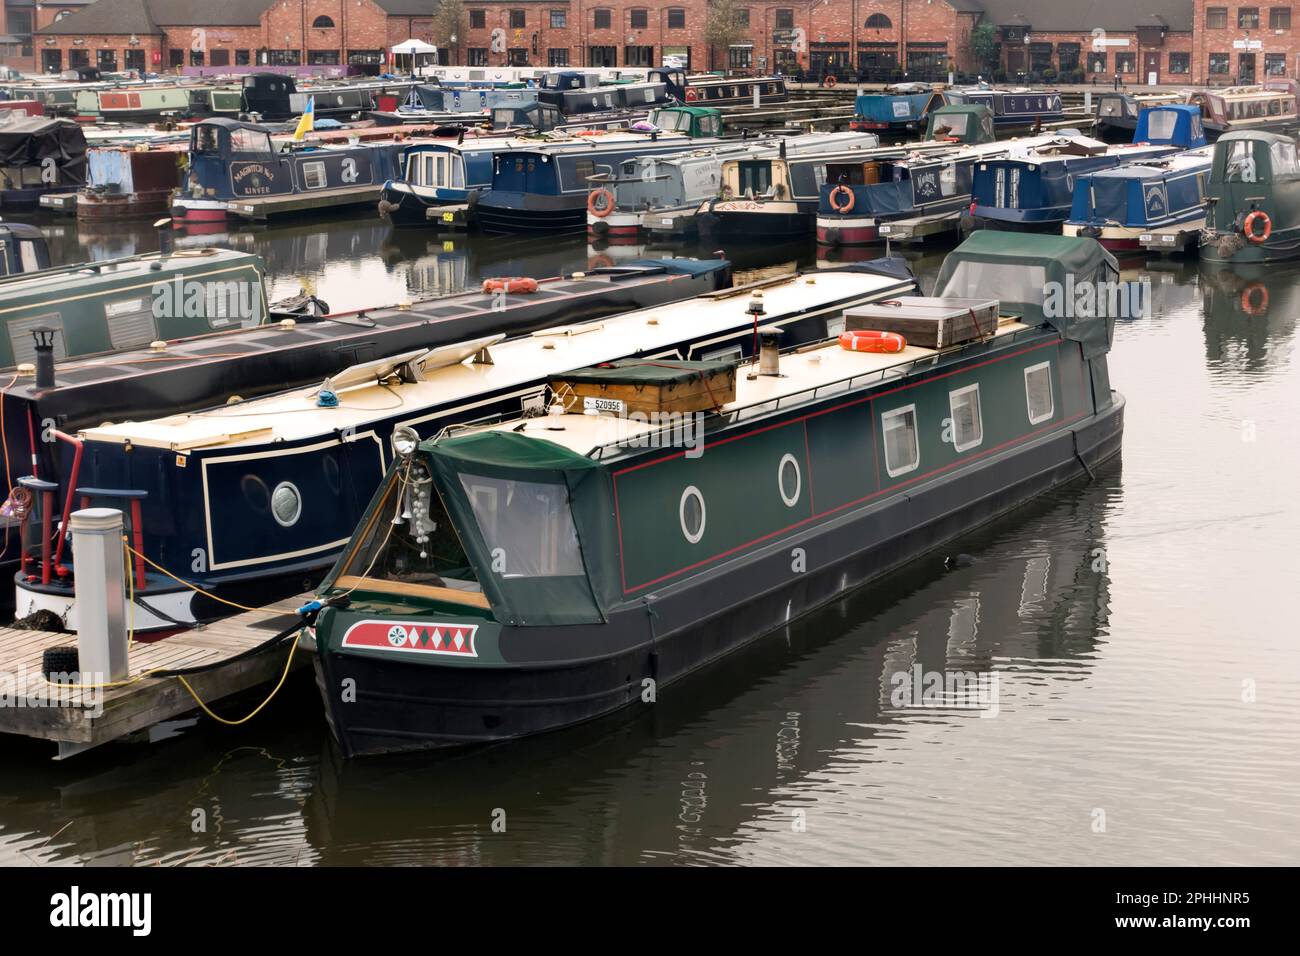 Des barques à la truelle ont amarré à Barton Marina, Trent et Mersey Canal, Staffordshire, Angleterre, Royaume-Uni Banque D'Images